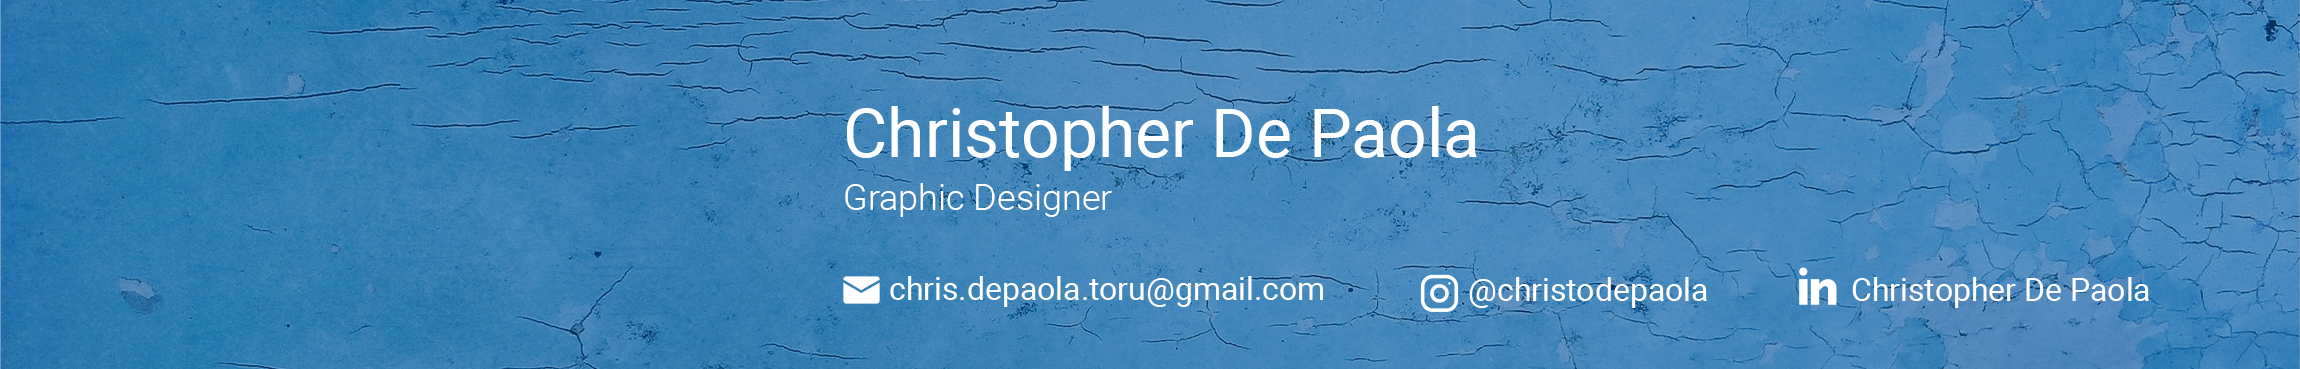 Christopher De Paola's profile banner